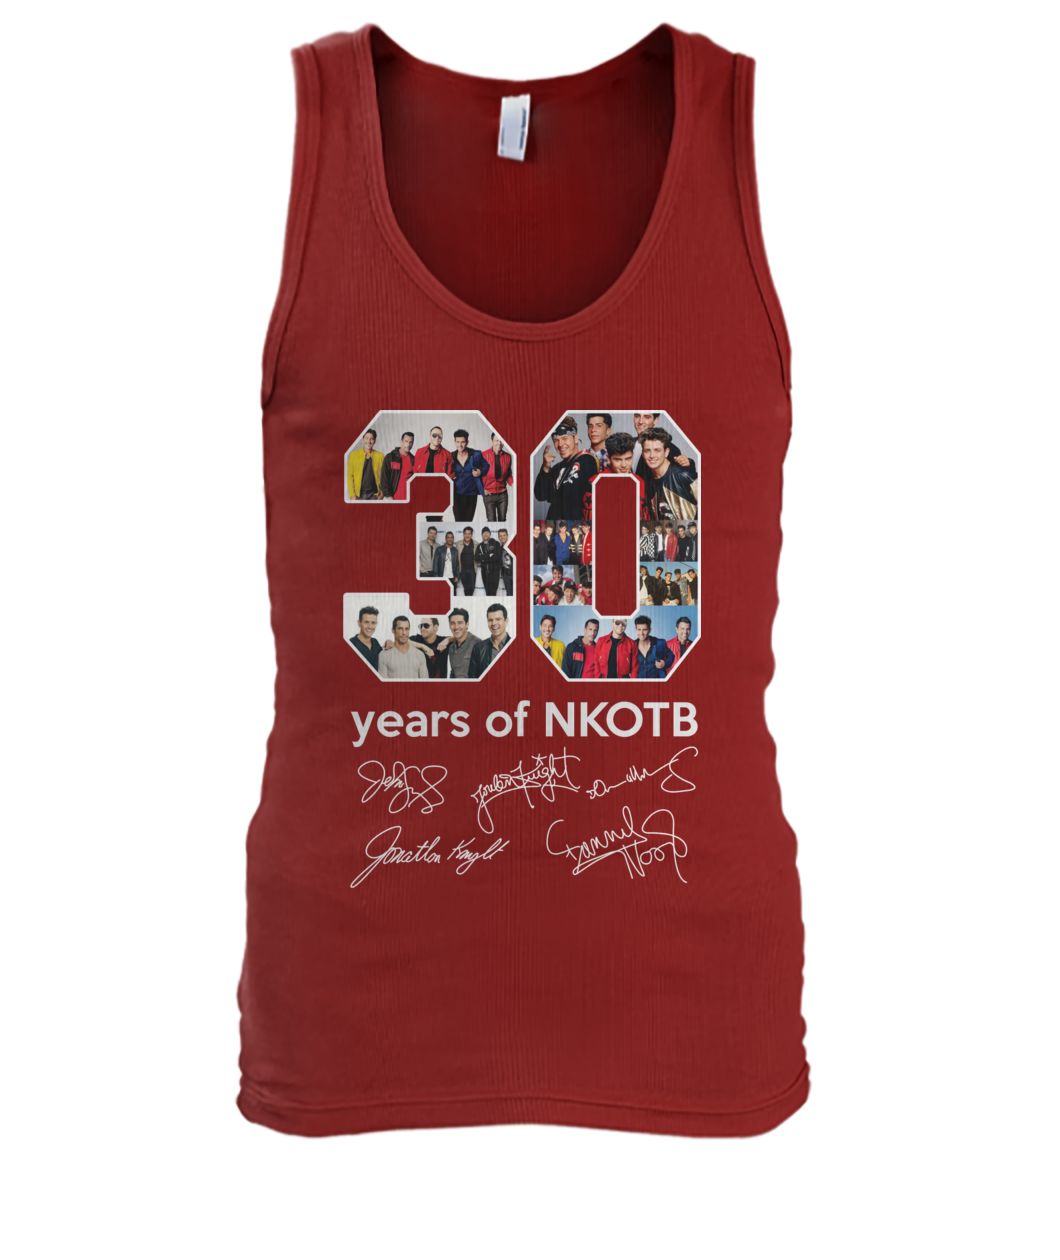 30 years of NKOTB signature men's tank top